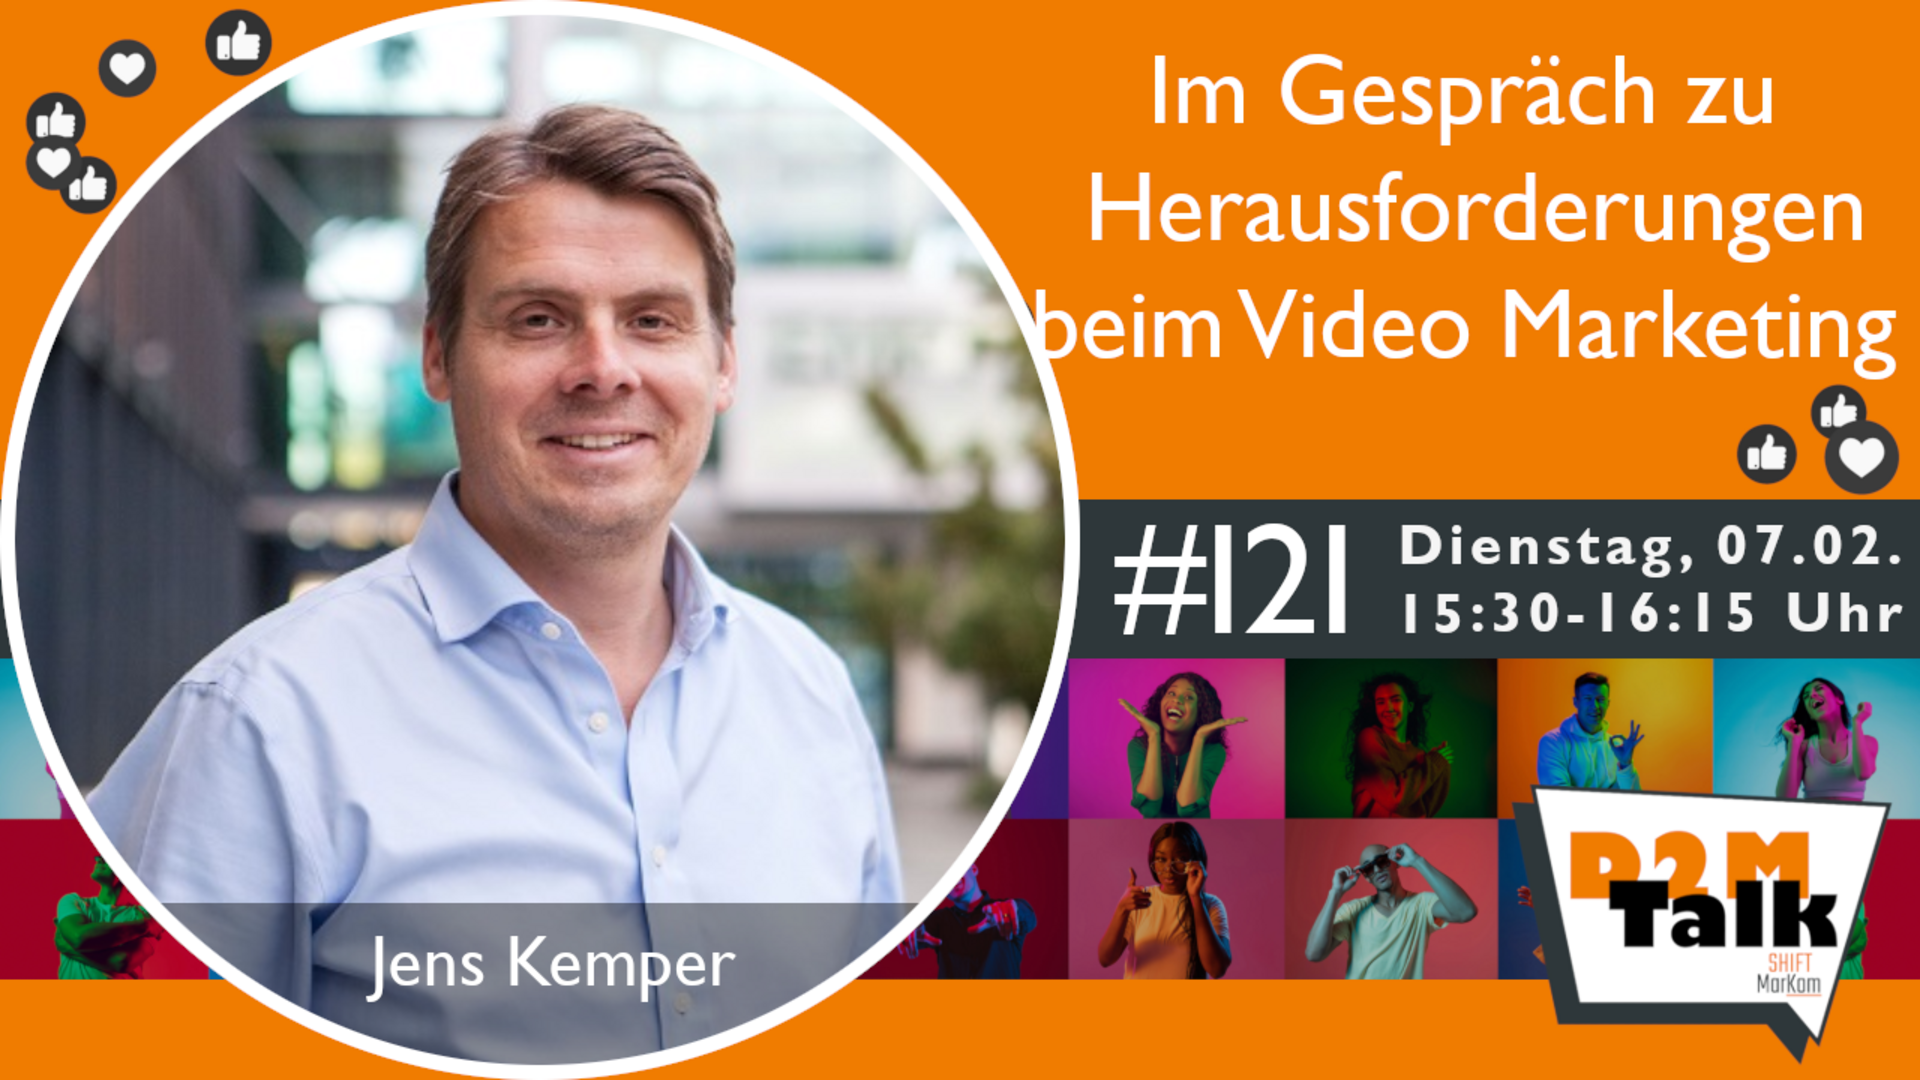 Im Gespräch mit Jens Kemper zu den Herausforderungen beim Video Marketing